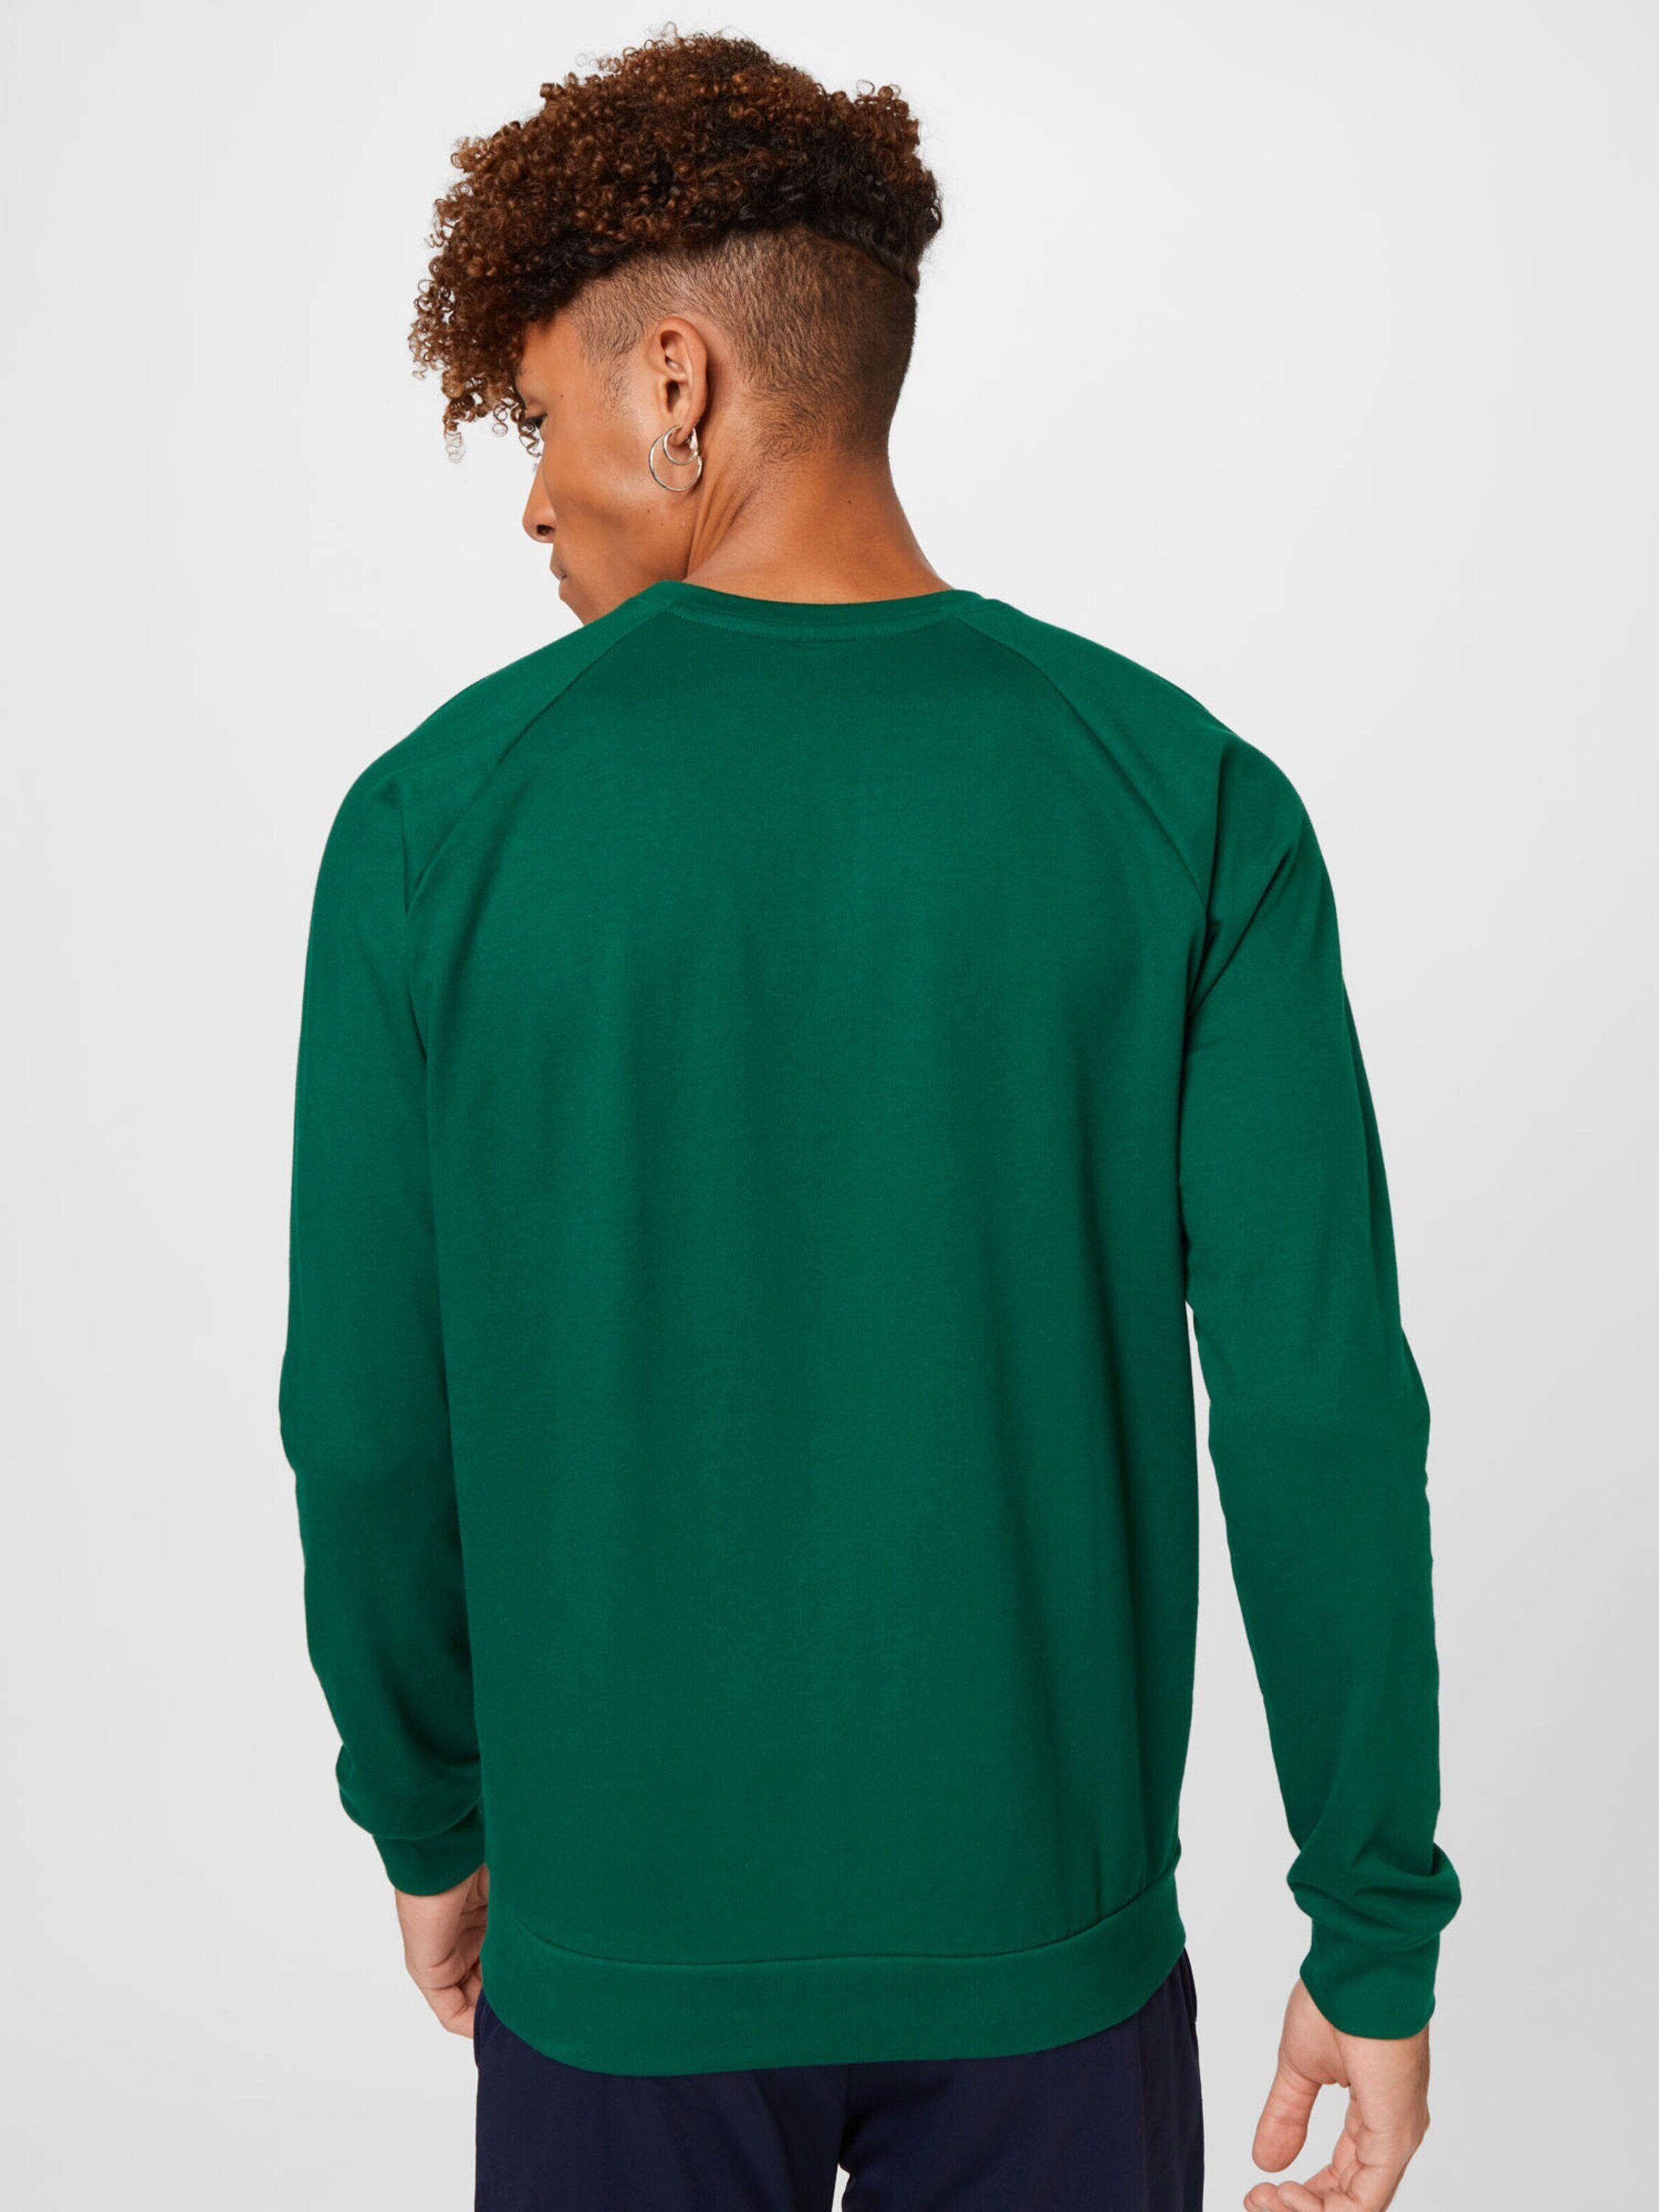 hummel Gruen (1-tlg) Sweatshirt